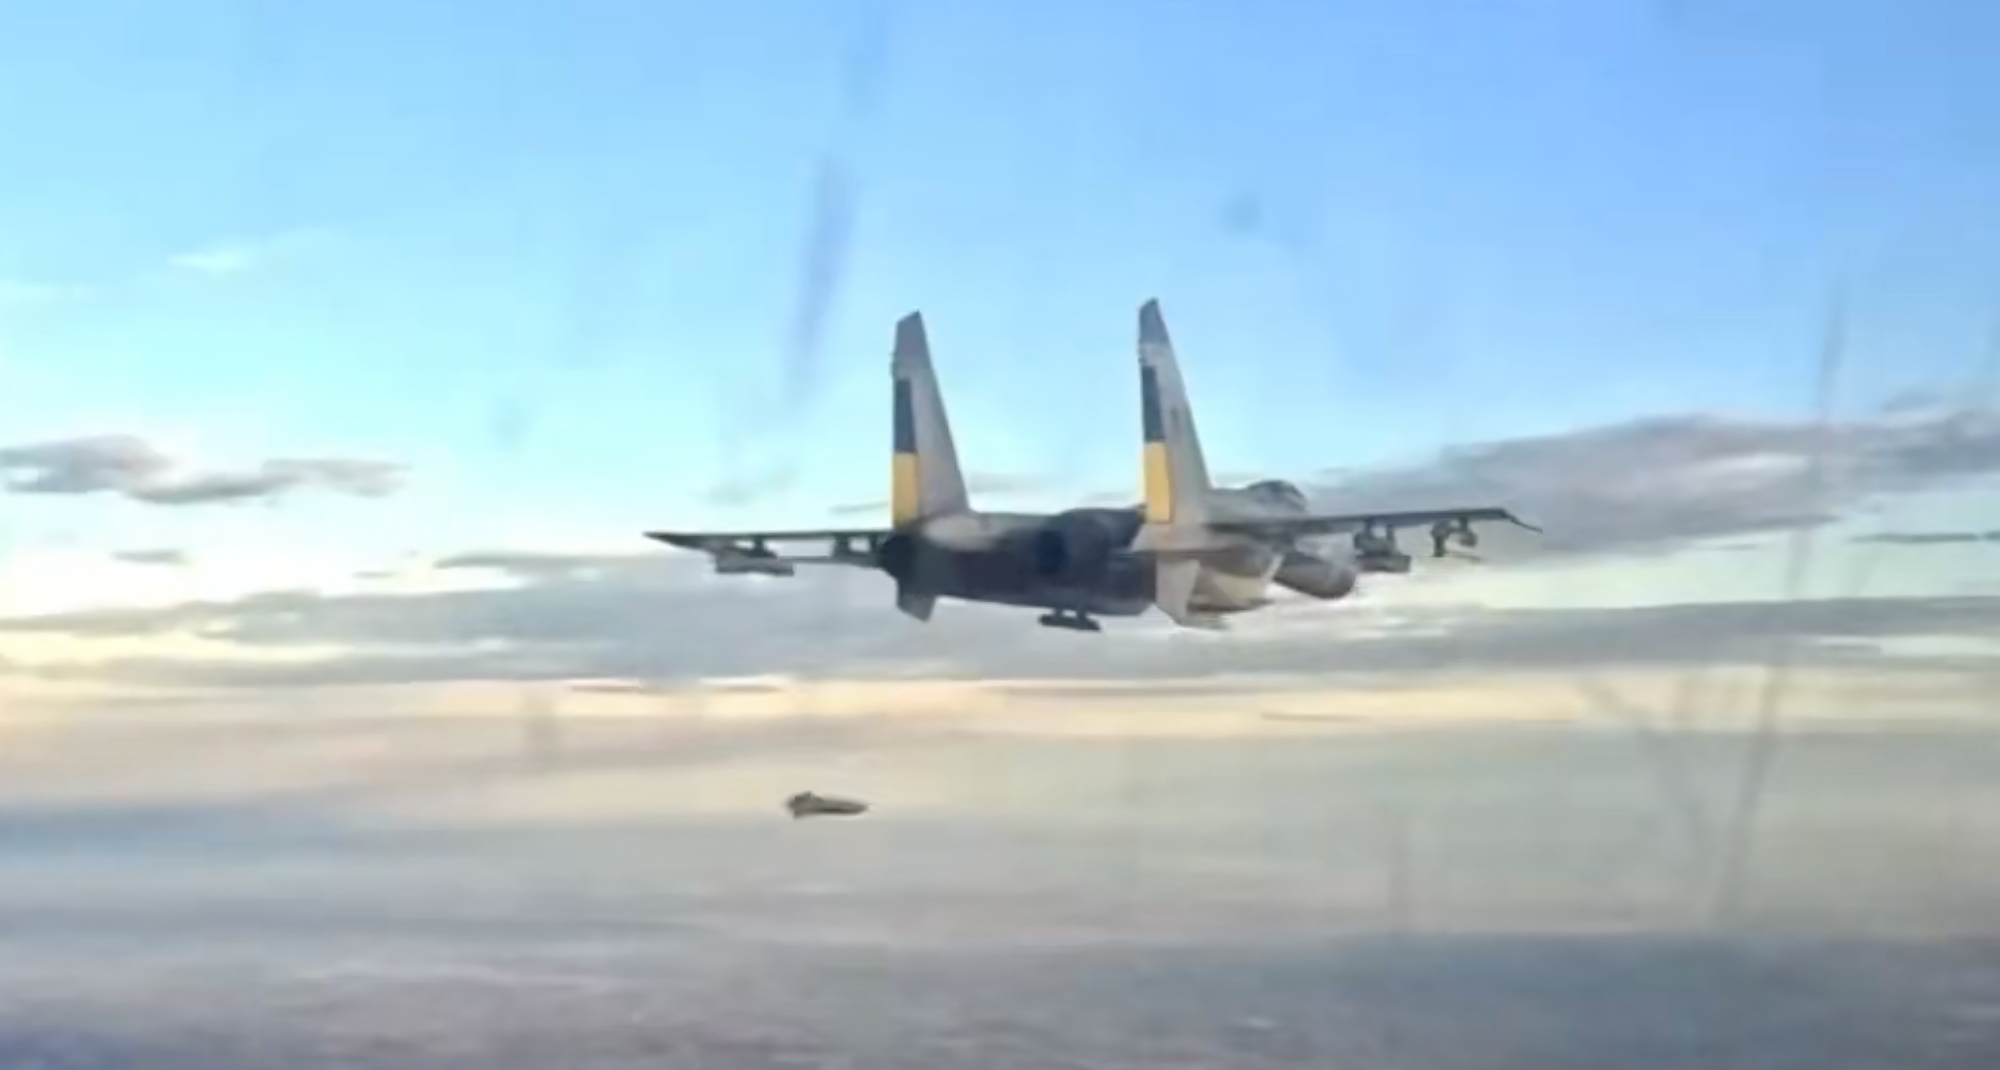 Unikke optagelser: Ukrainske Su-27 jagerfly affyrer franske AASM-250 Hammer-bomber og amerikanske AGM-88 HARMS-missiler